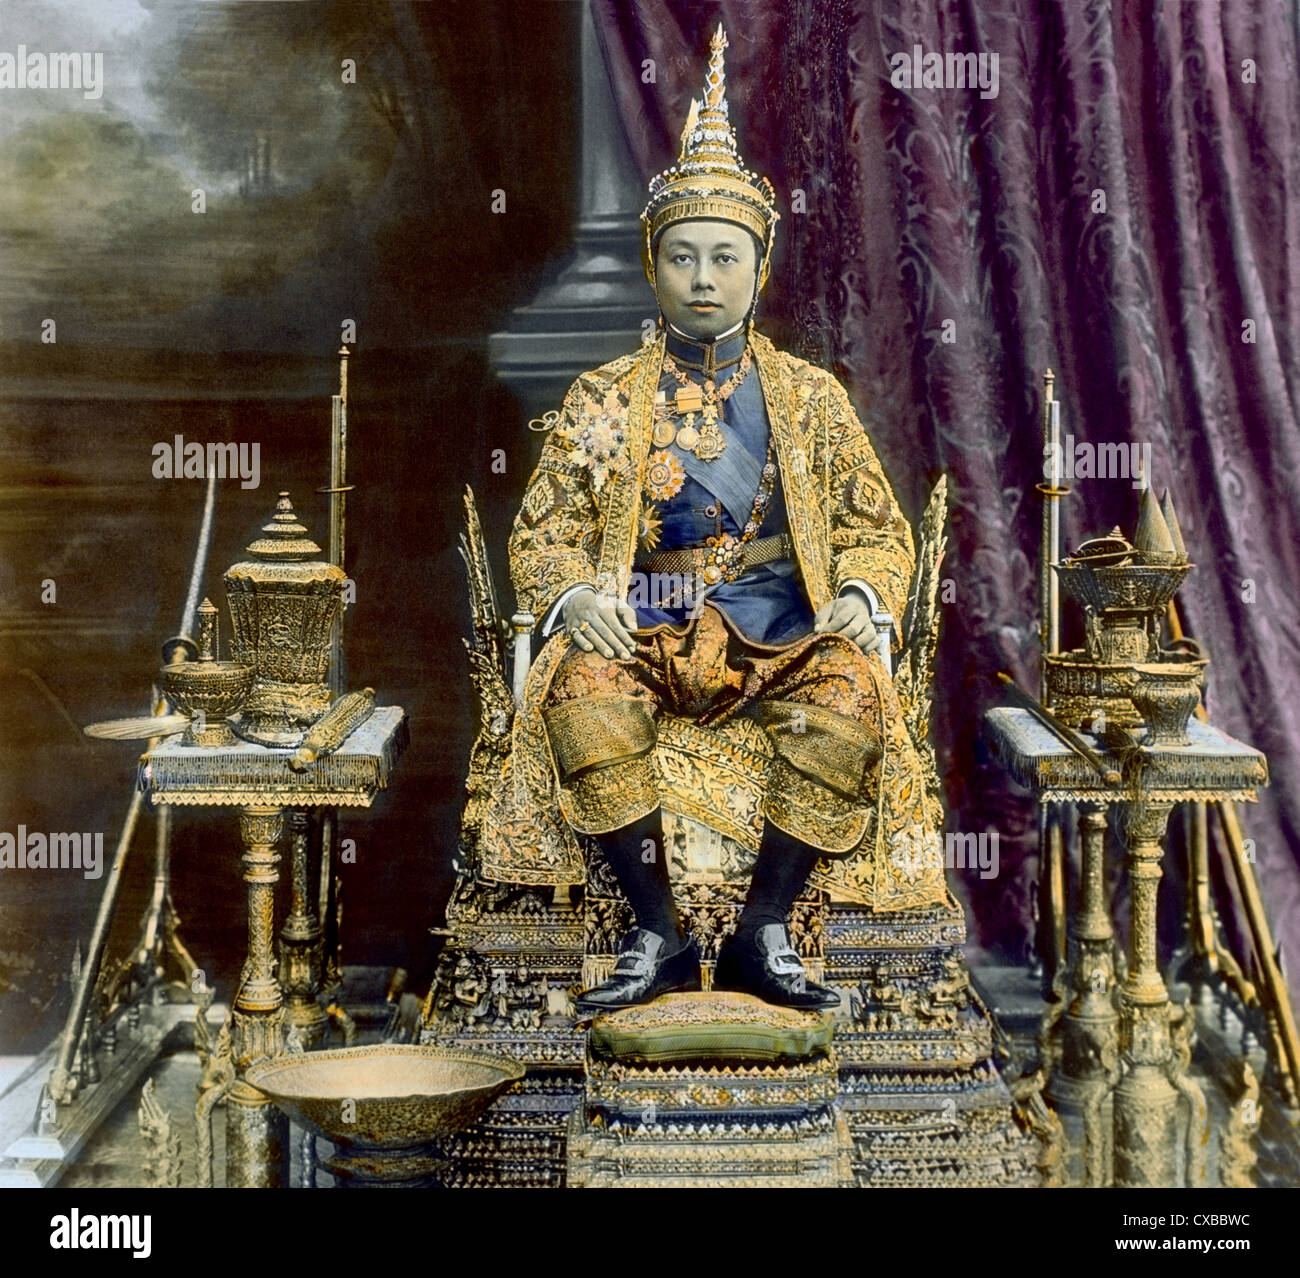 Portrait coloré du roi siamois Vajiravudh (1881 - 1925) également connu sous le nom de Rama VI, roi de Siam, assis sur un trône, Bangkok, Siam, vers 1925. (Photo de Burton Holmes) Banque D'Images